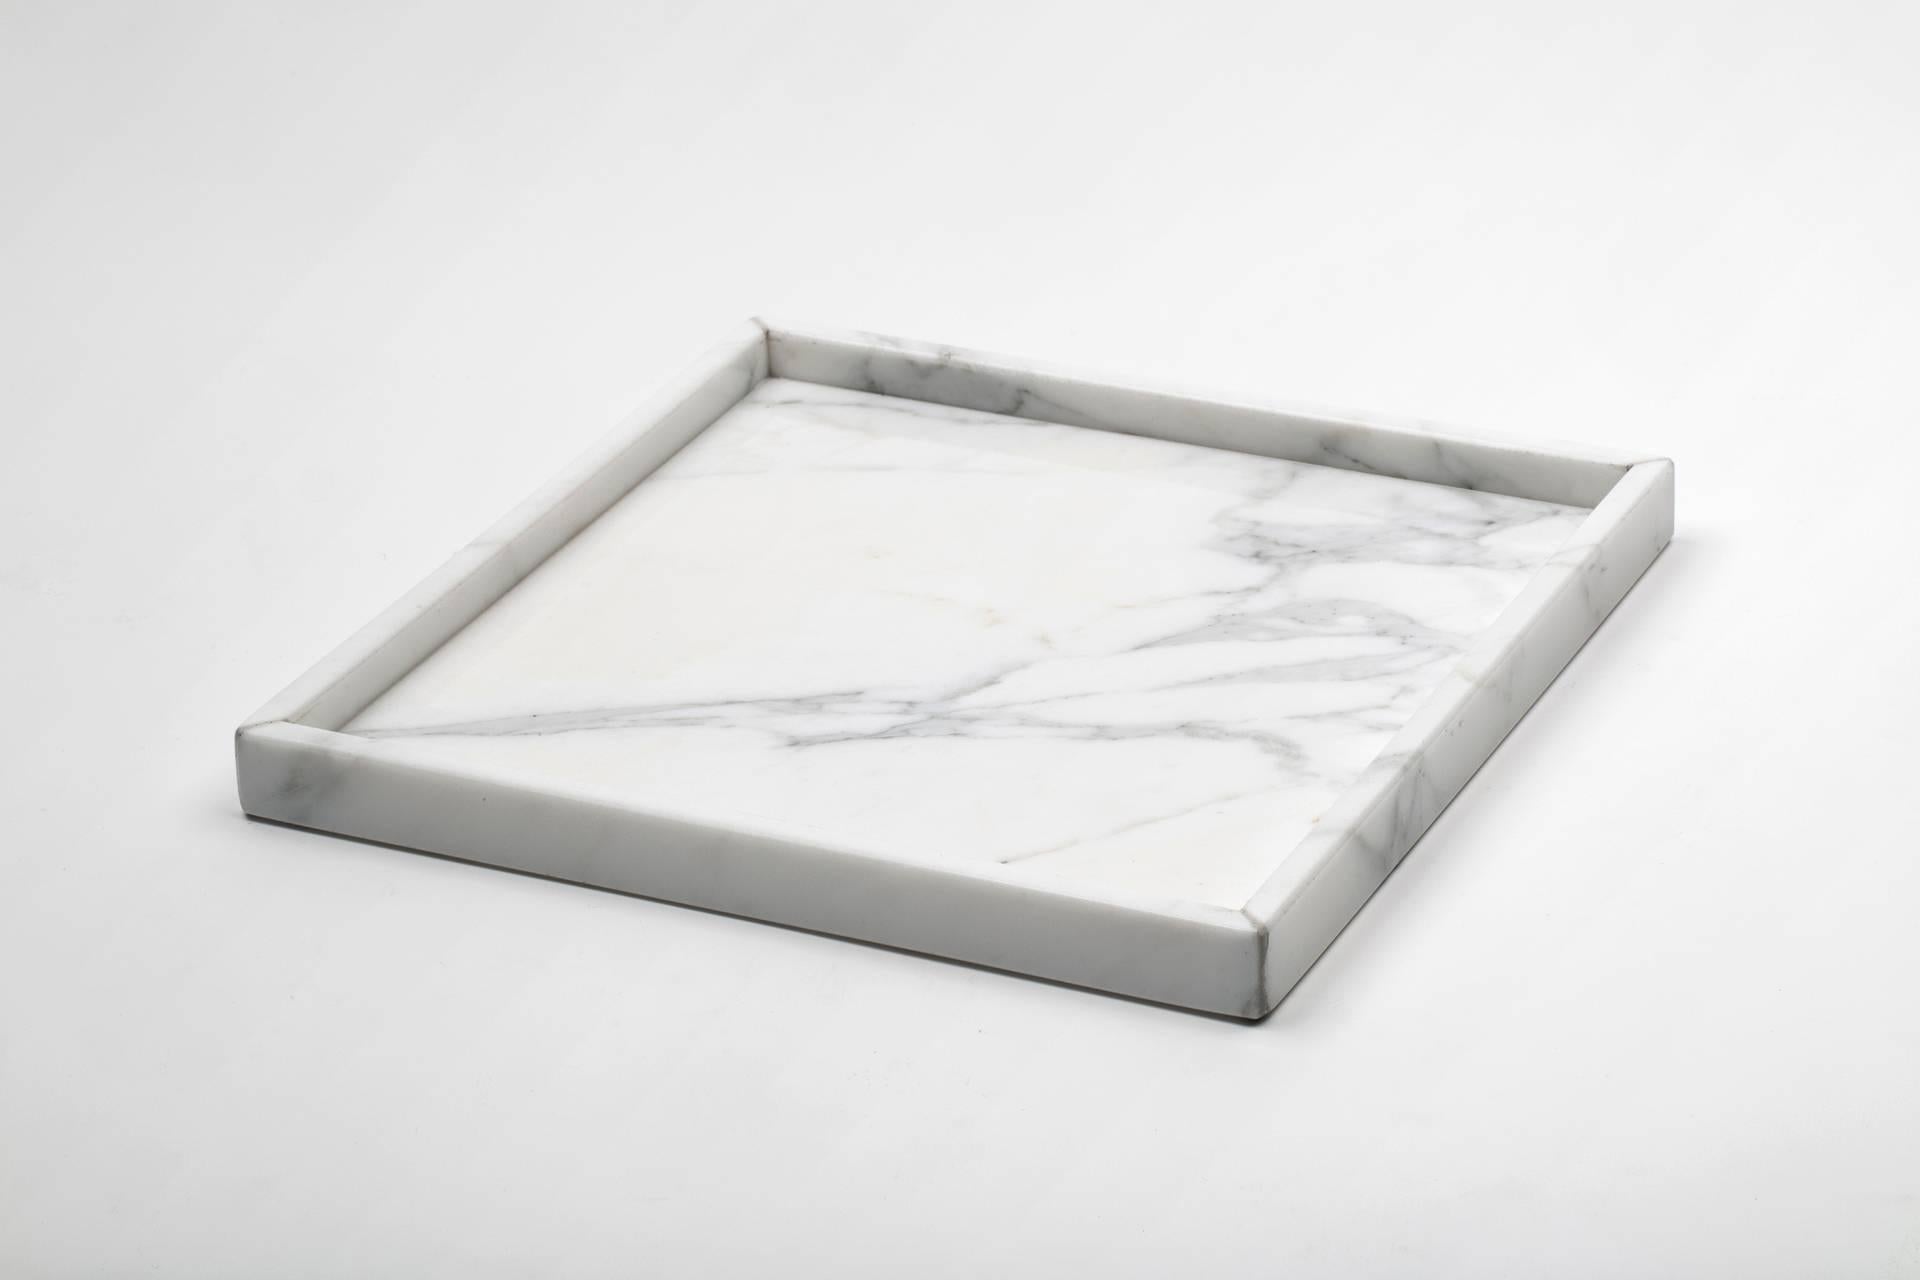 Ein Set für das Badezimmer aus weißem Carrara-Marmor, bestehend aus: Ein abgerundeter Seifenspender (Durchmesser 9 x 19,5 cm), ein abgerundeter Zahnbürstenhalter (Durchmesser 7 x 12 cm), ein Spa-Tablett (26,5 x 26,5 x 2 cm).
Jedes Stück ist ein